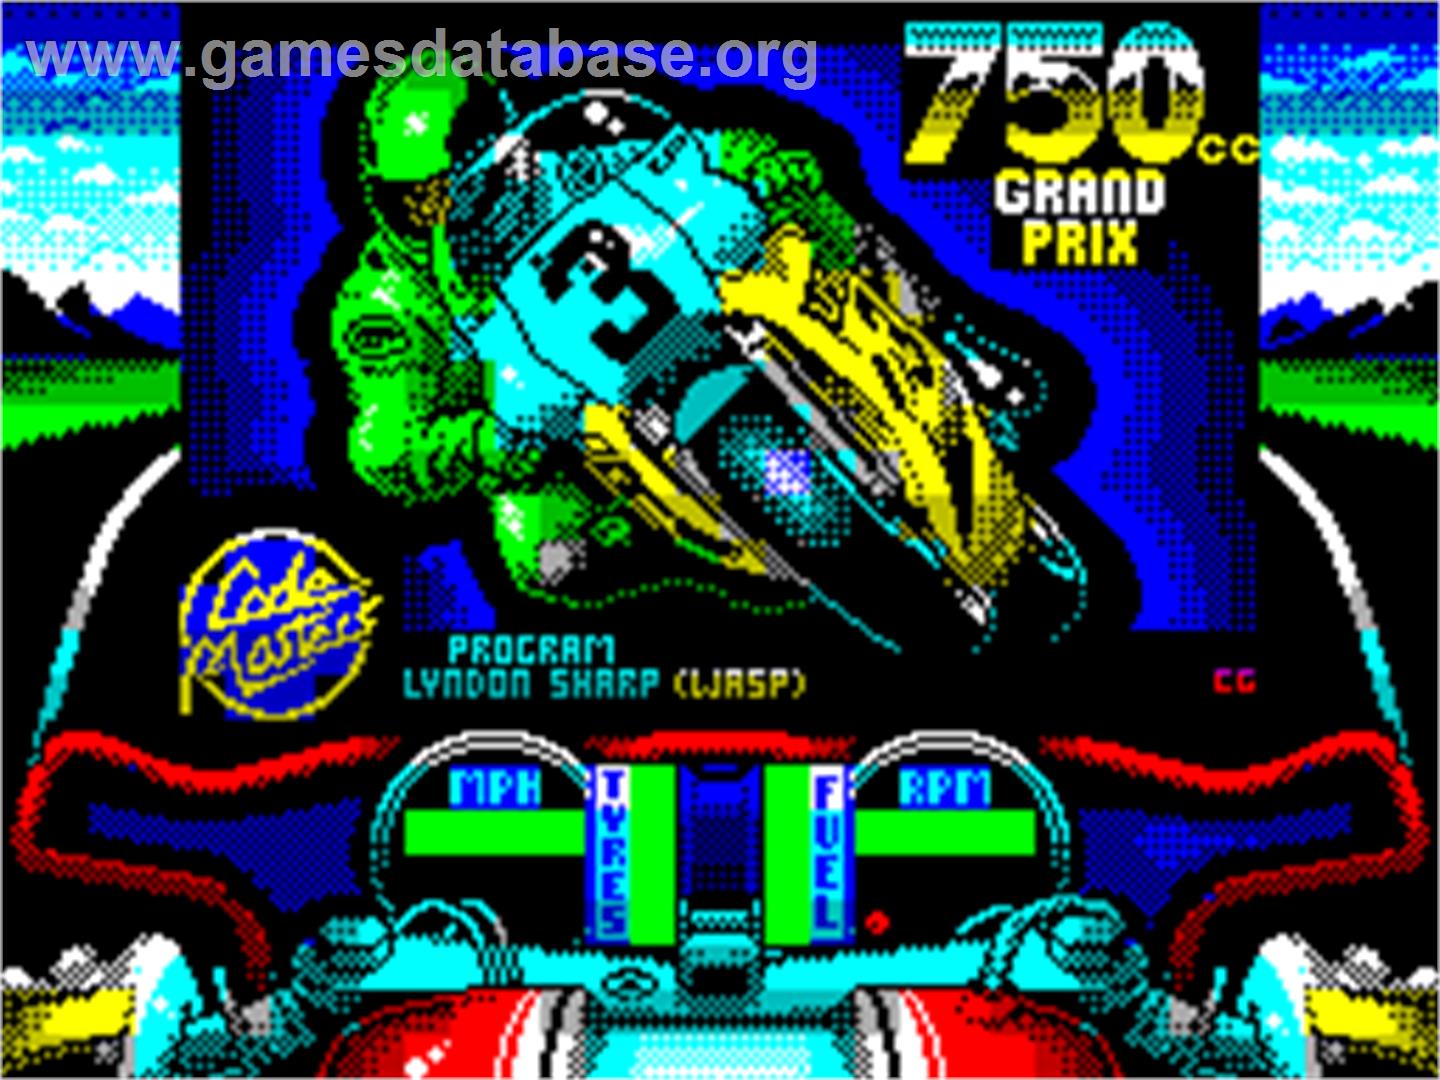 750cc Grand Prix - Sinclair ZX Spectrum - Artwork - Title Screen